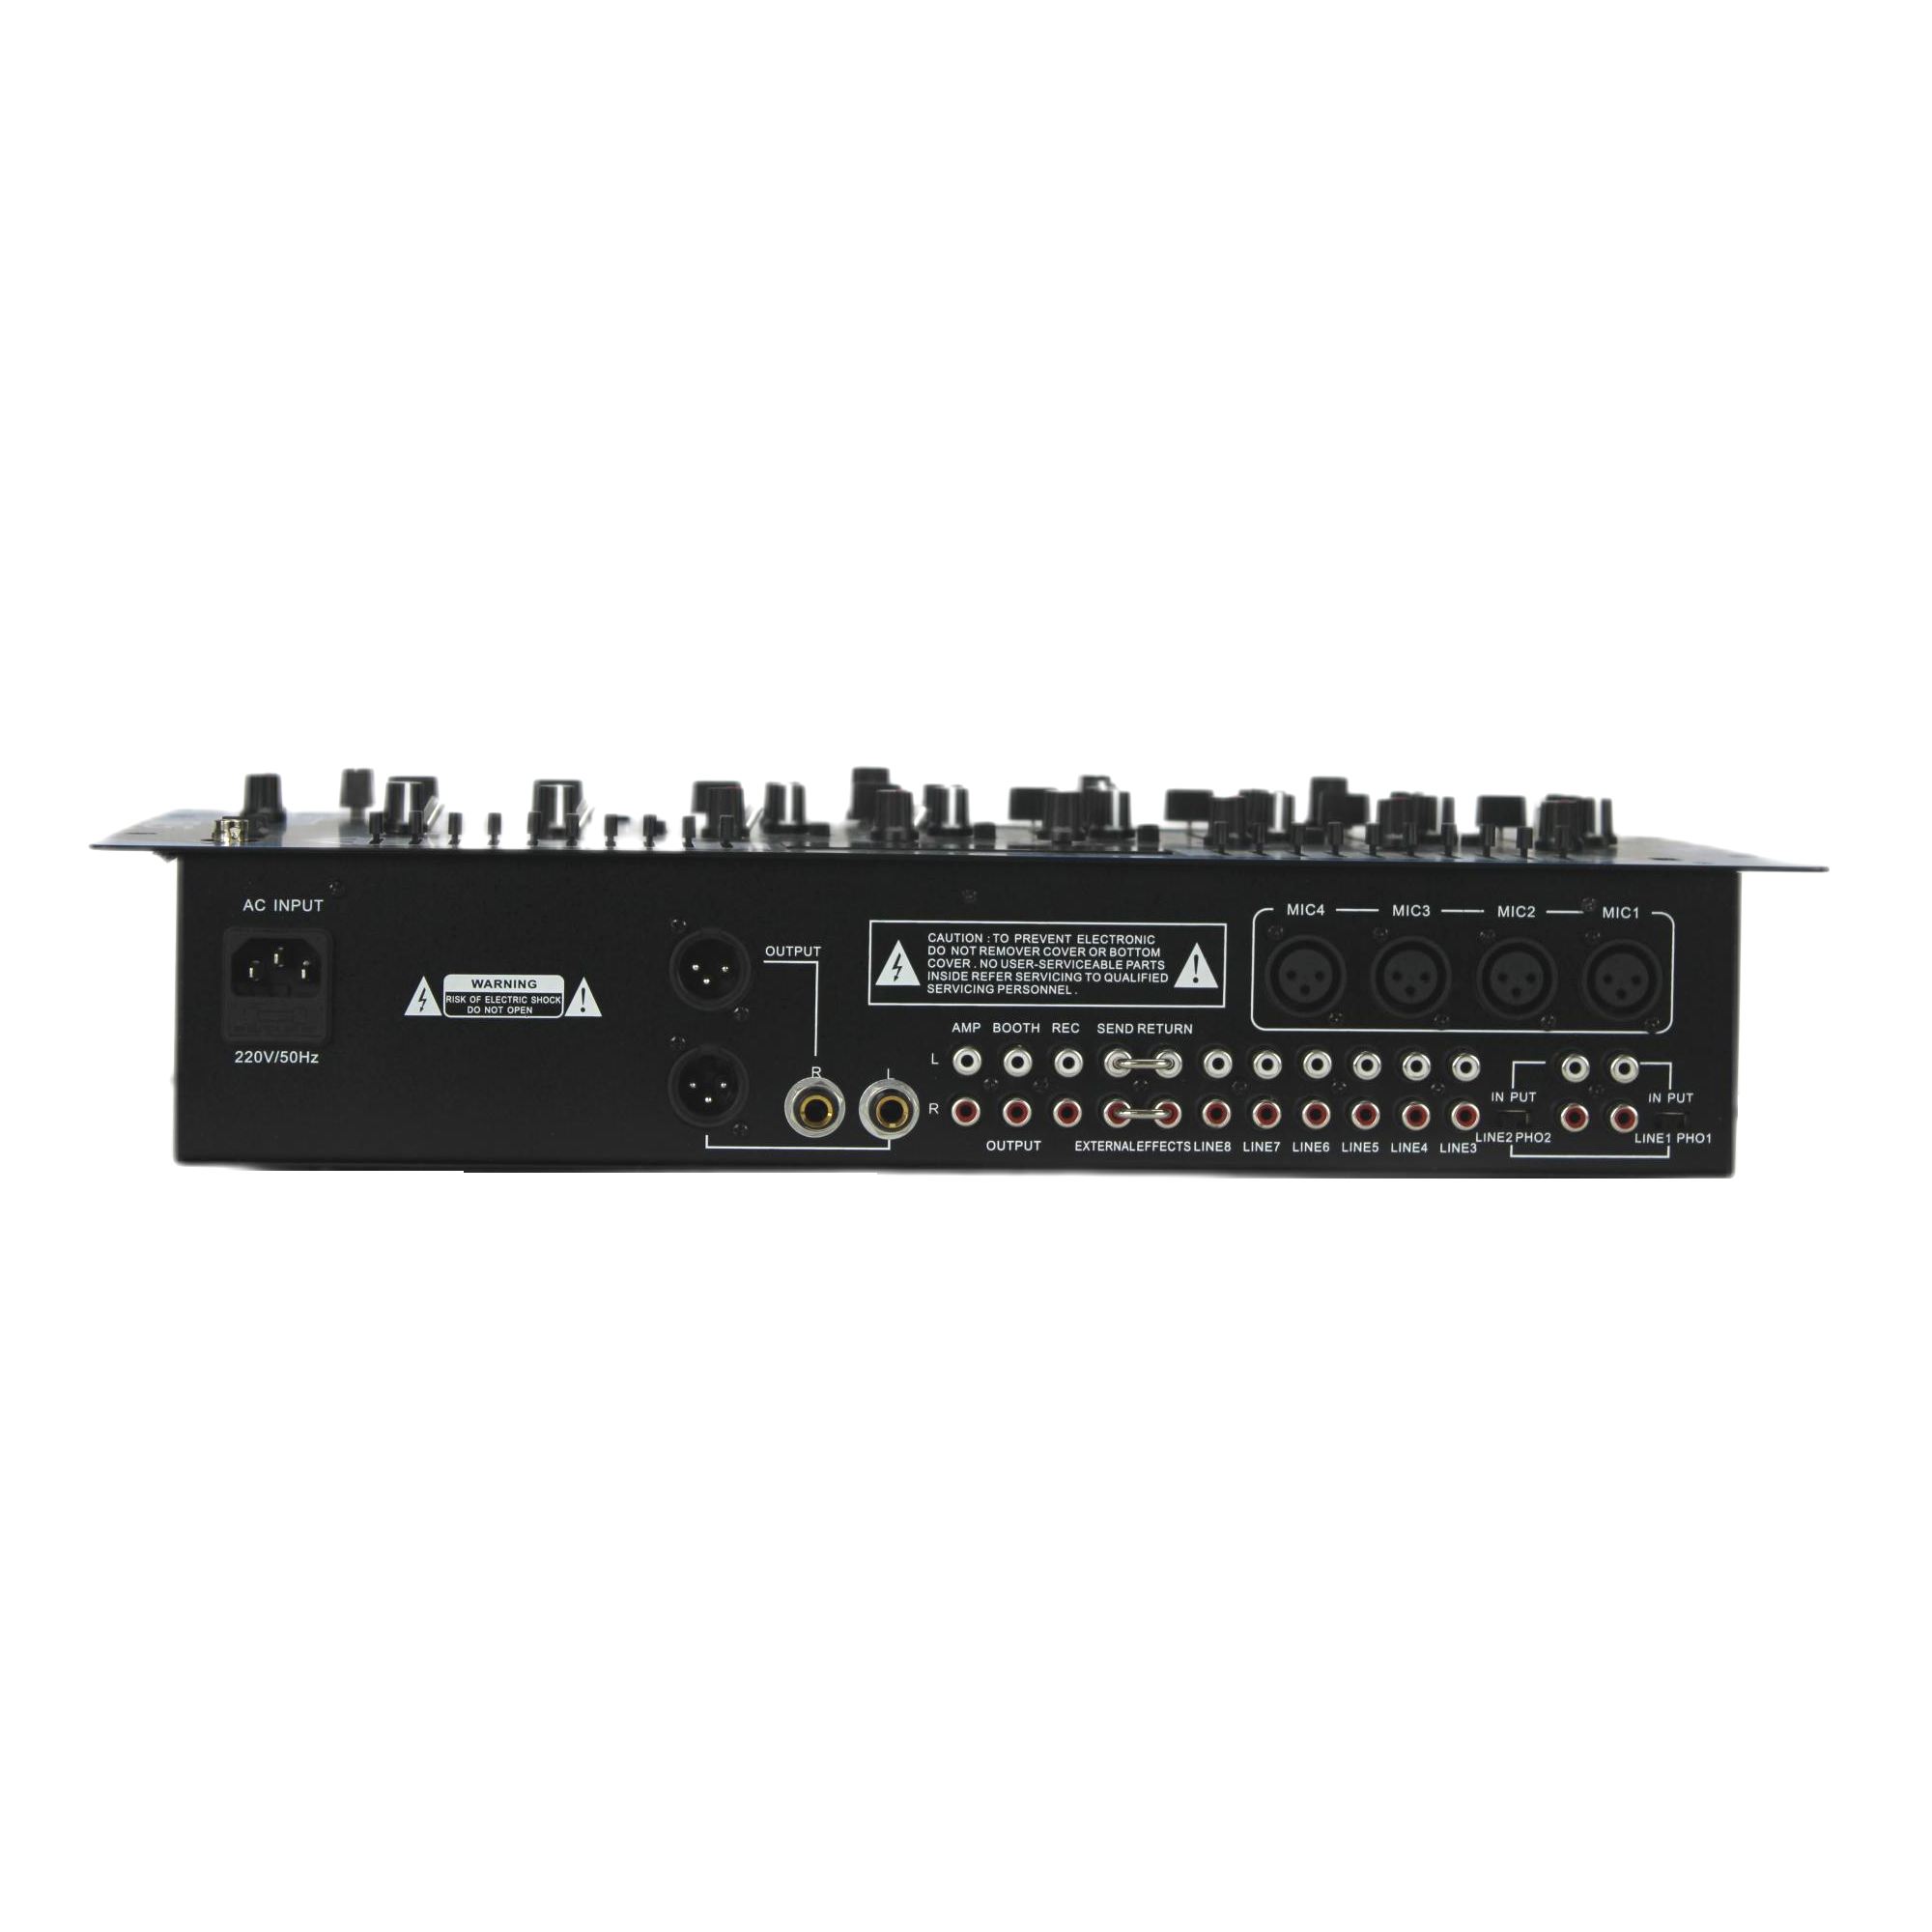 DJM166-USB DJ MIXER 6 stereo channels16 inputs